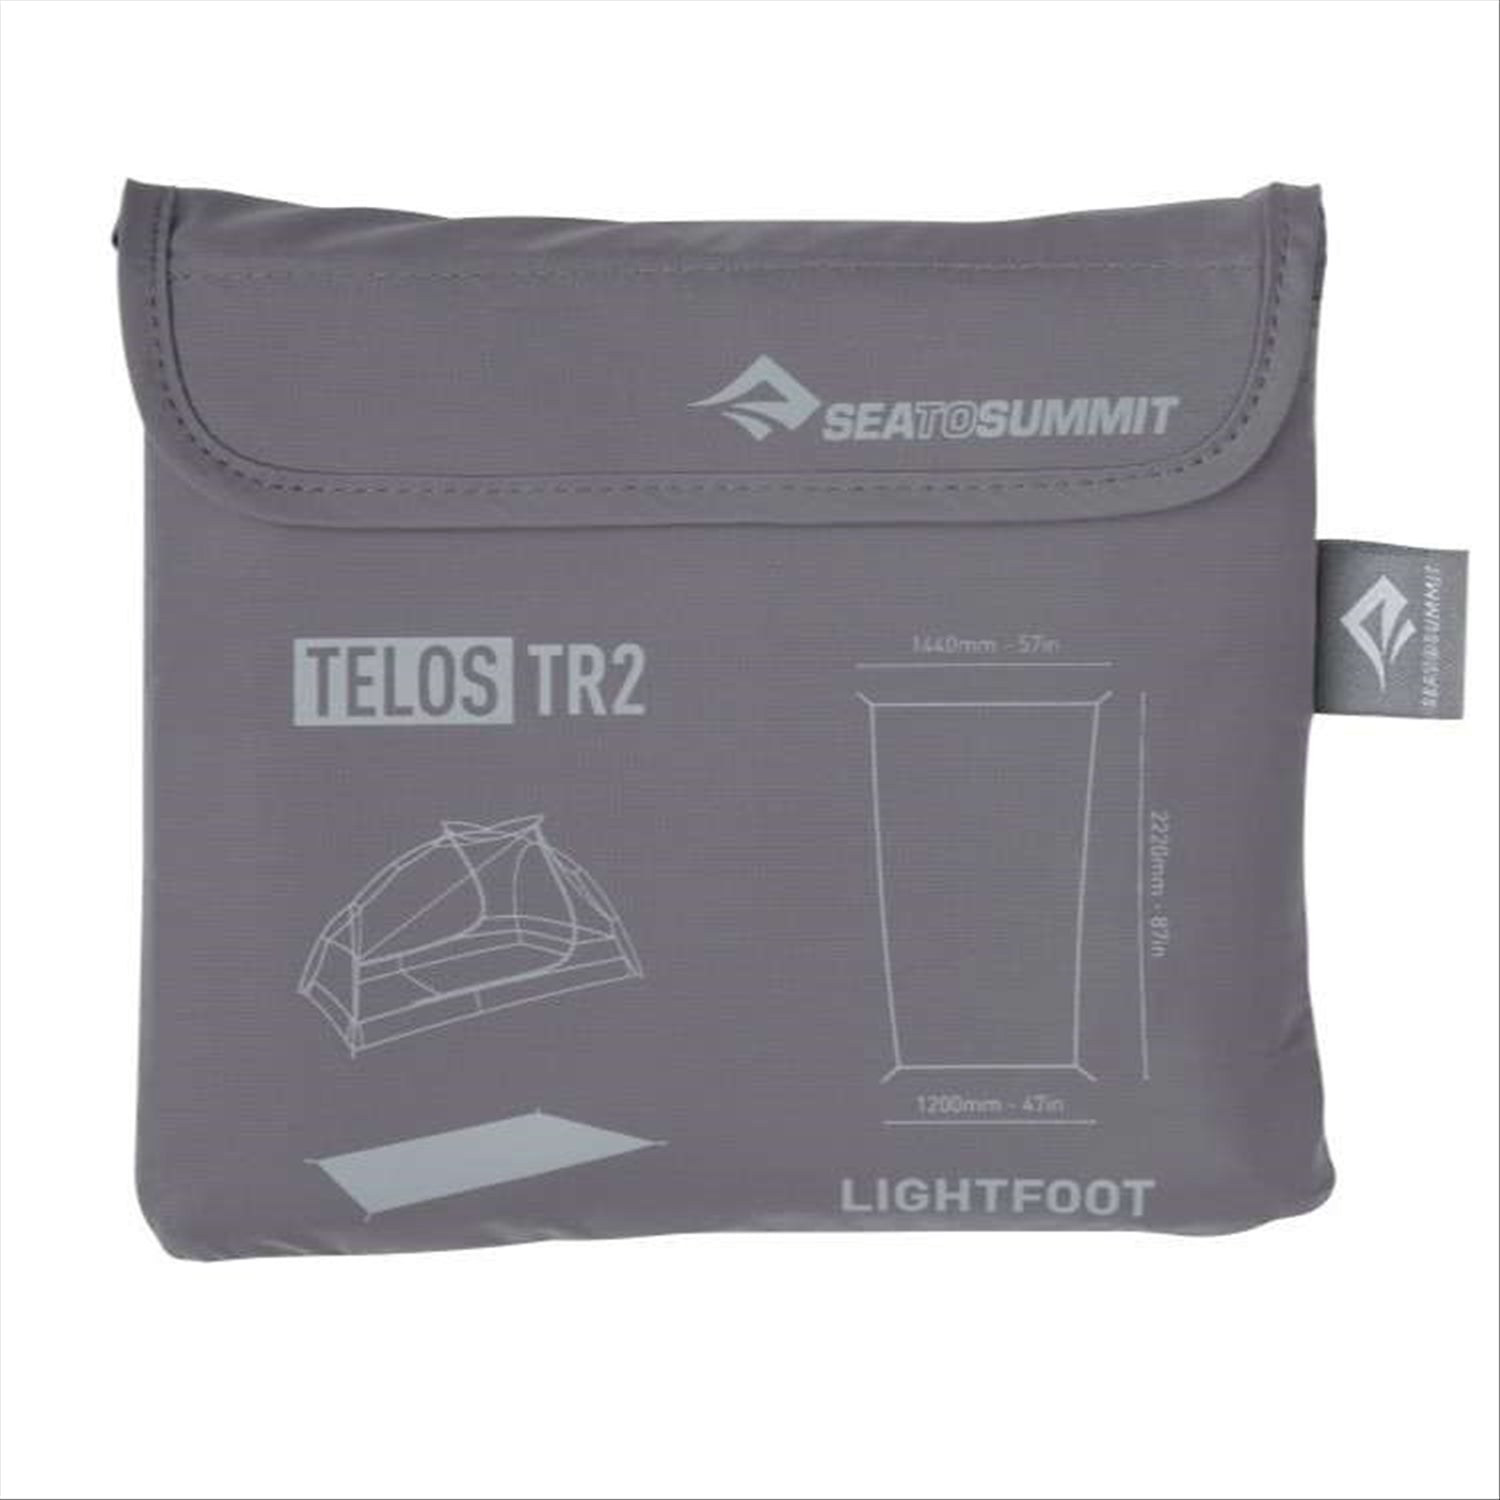 Sea To Summit Telos TR2 Lightfoot Tent Groundsheet